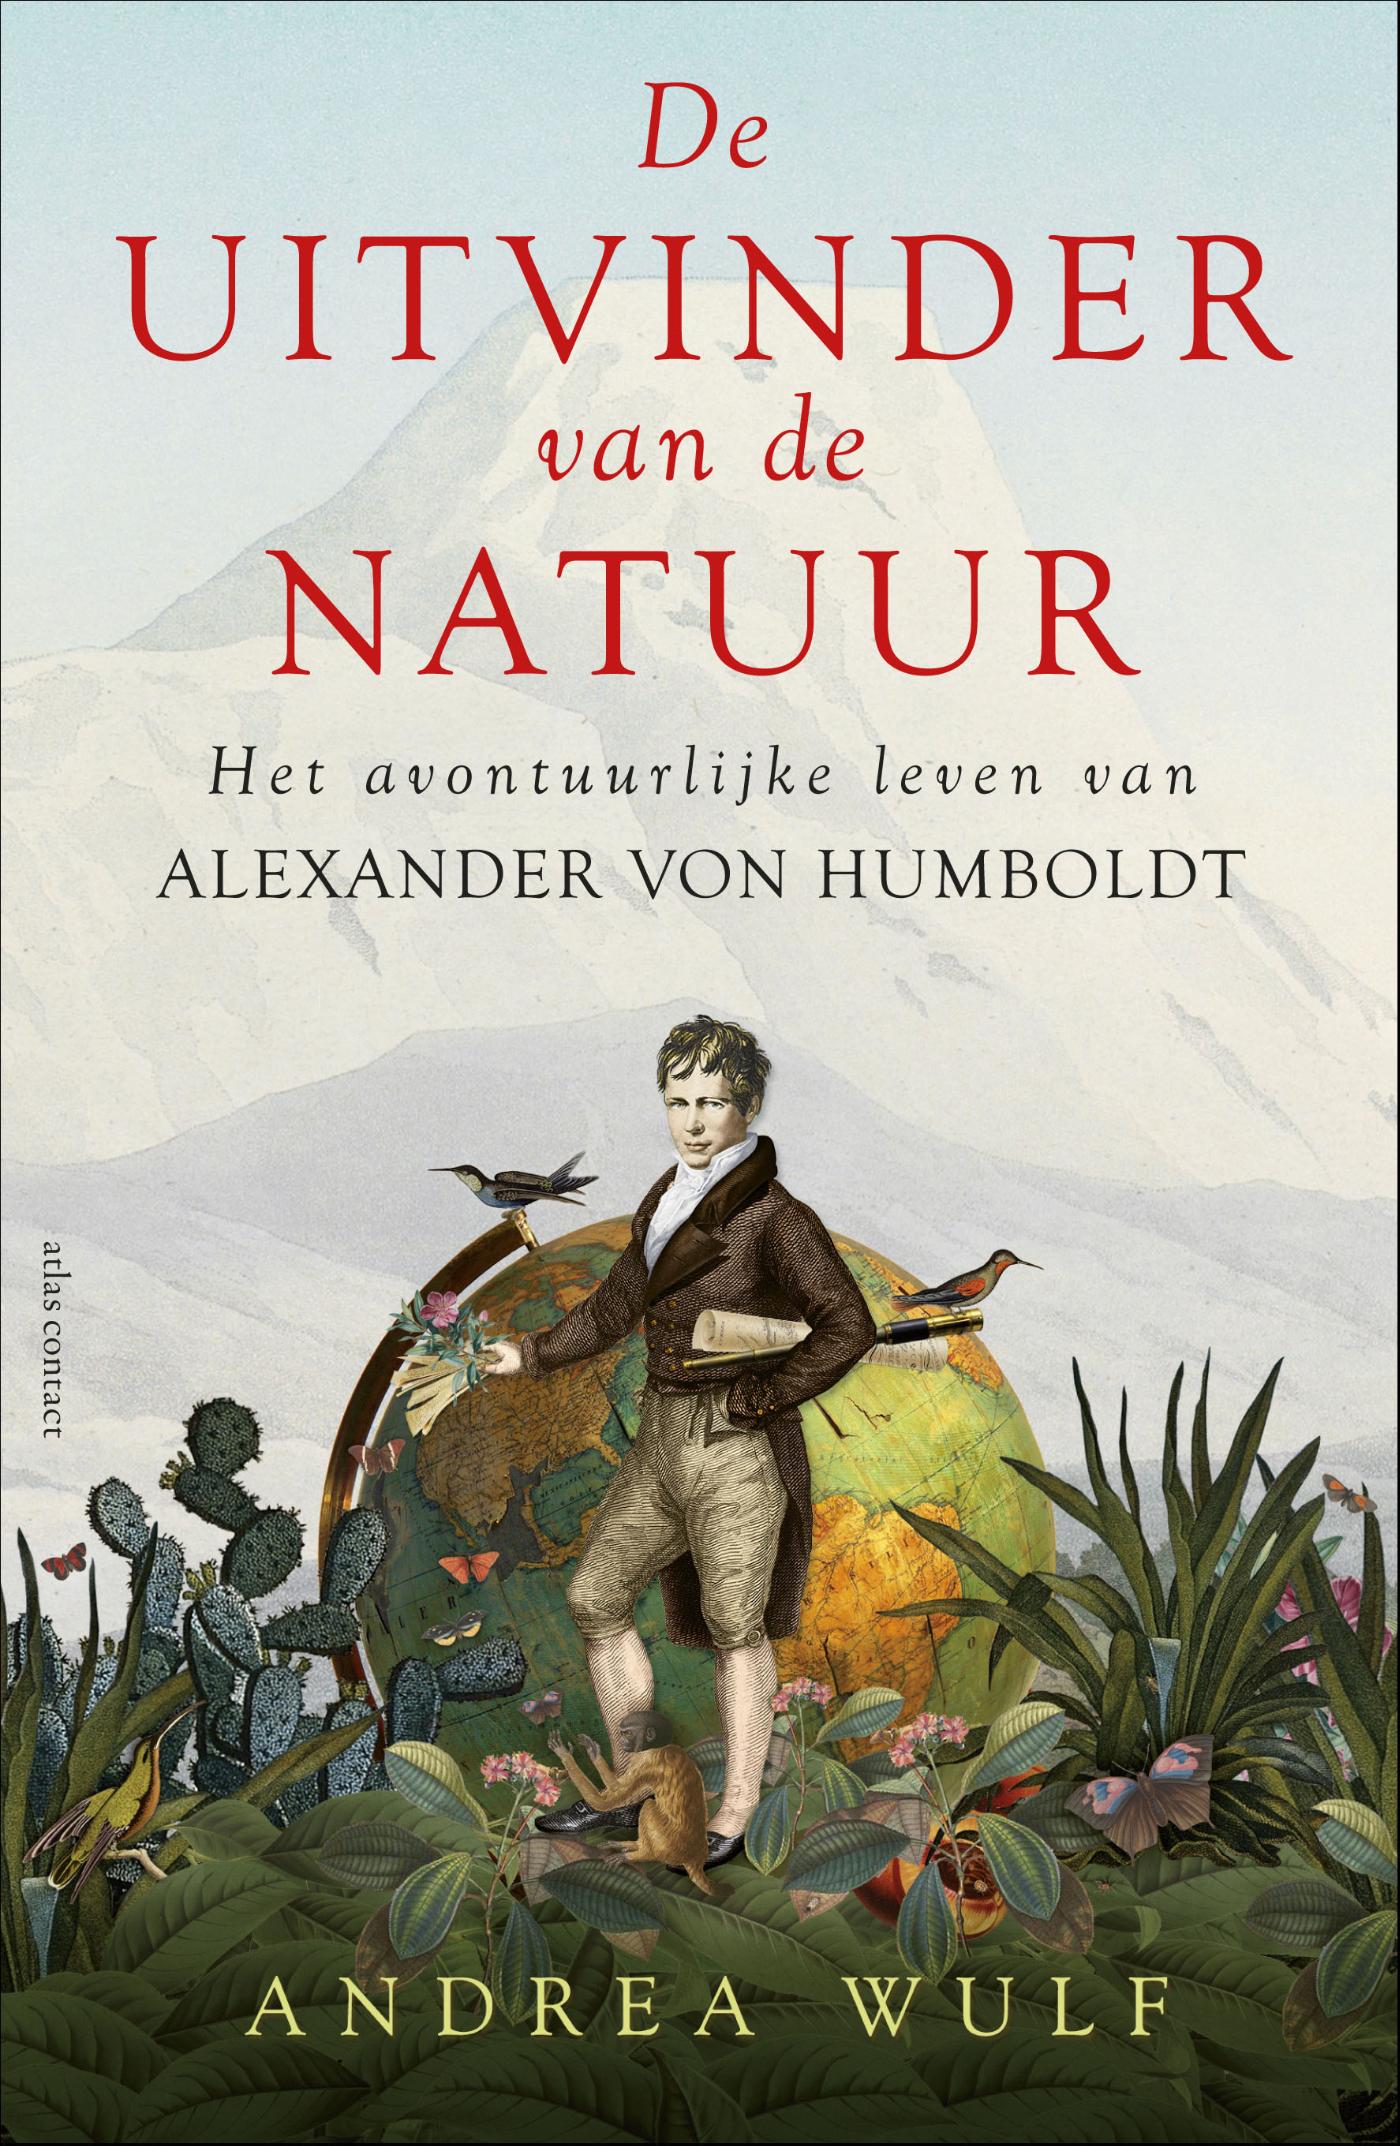 De uitvinder van de natuur (Ebook)